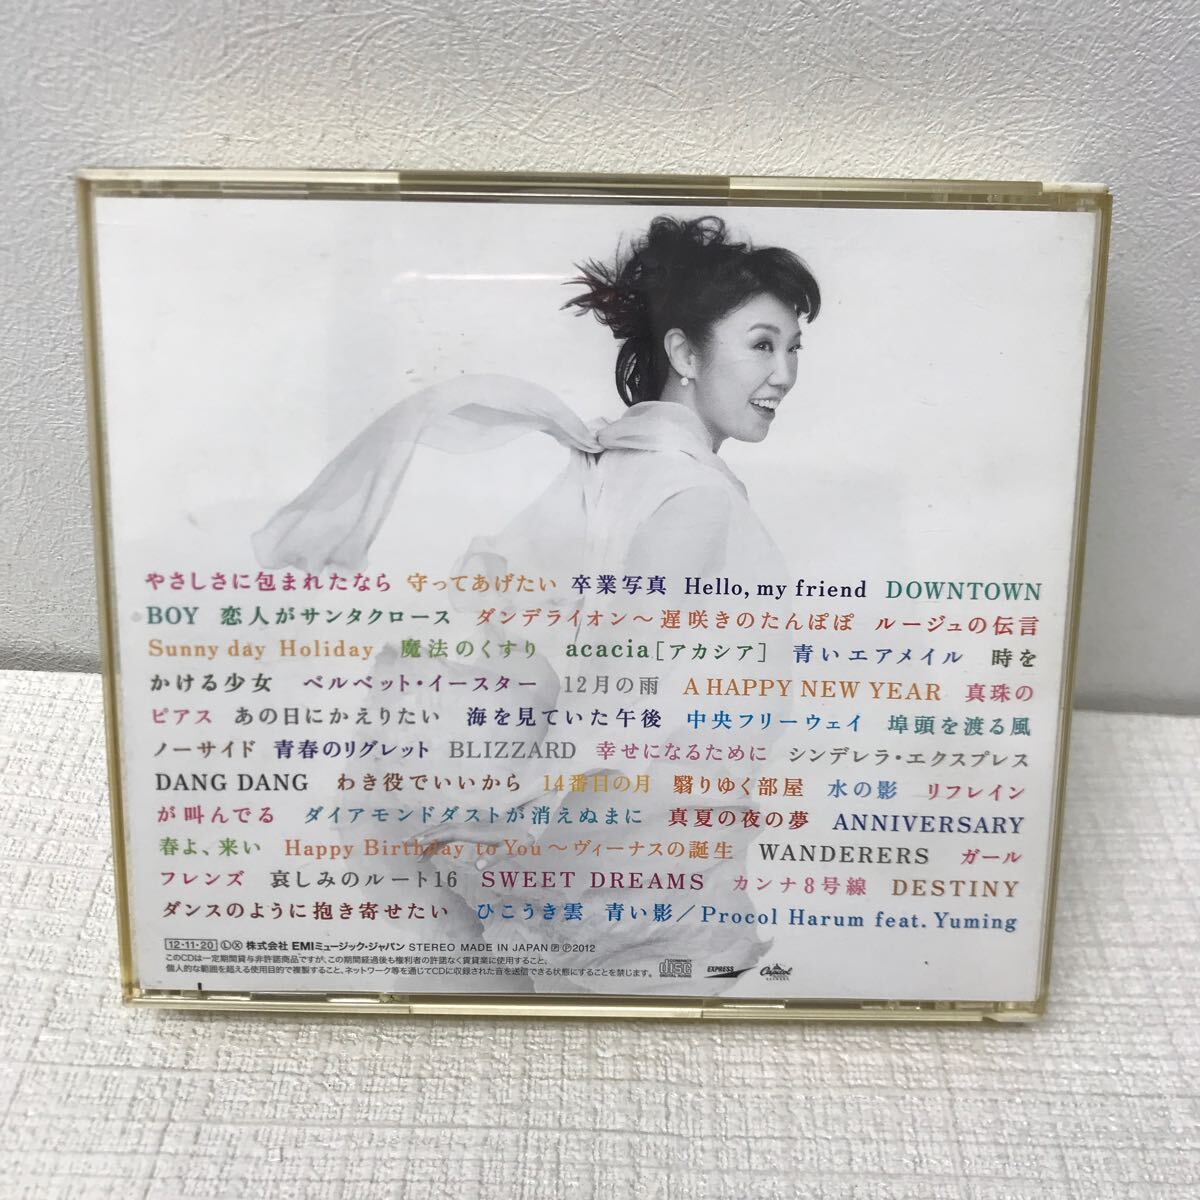 I0411A3 日本の恋と、ユーミンと。 松任谷由実 40周年記念 ベストアルバム CD 3枚組 音楽 邦楽 やさしさに包まれたなら 卒業写真 他の画像2